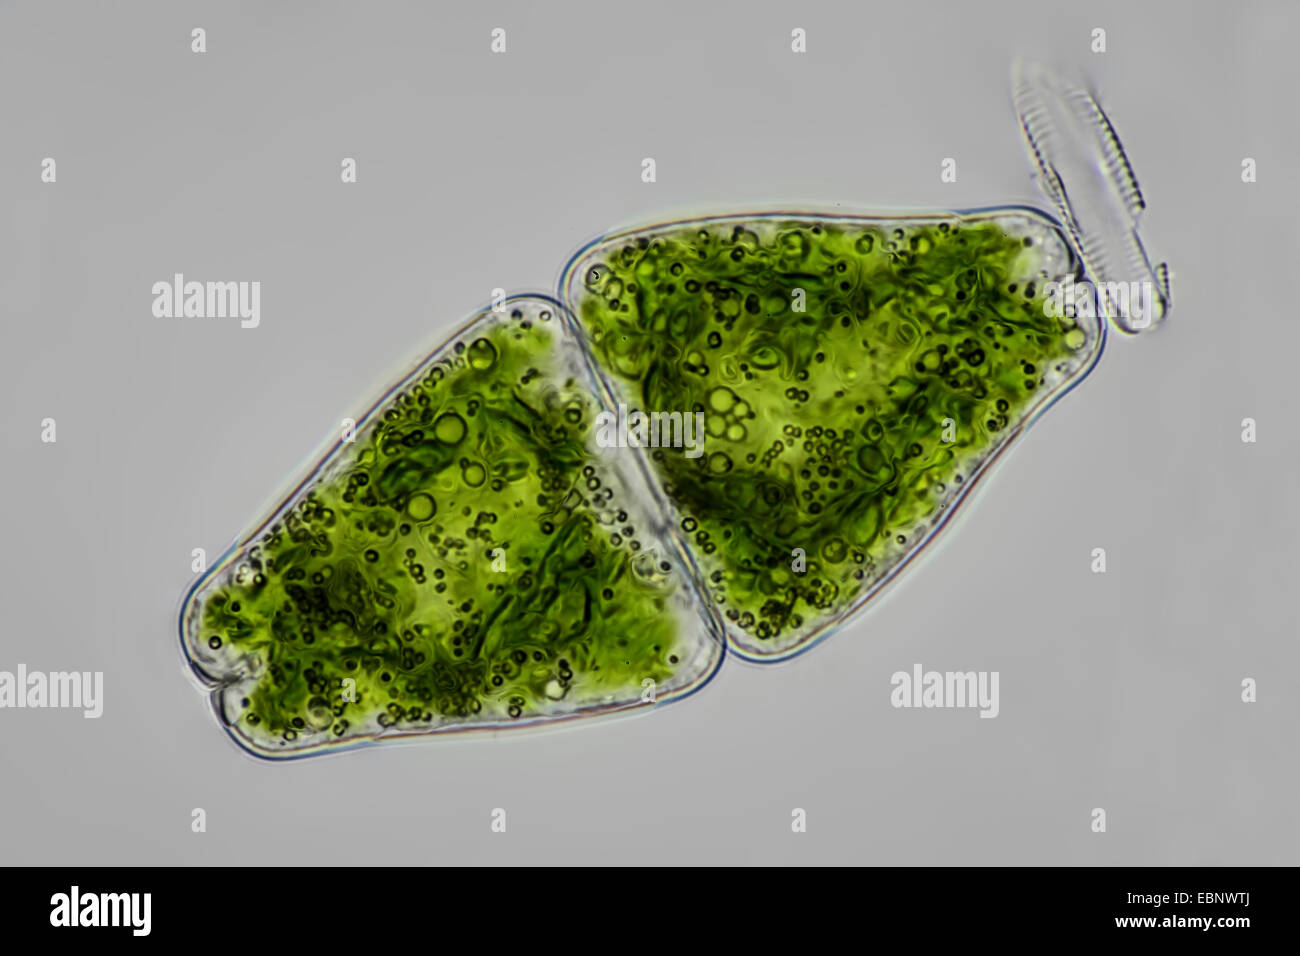 Euastrum (Euastrum spec.), single individual Stock Photo